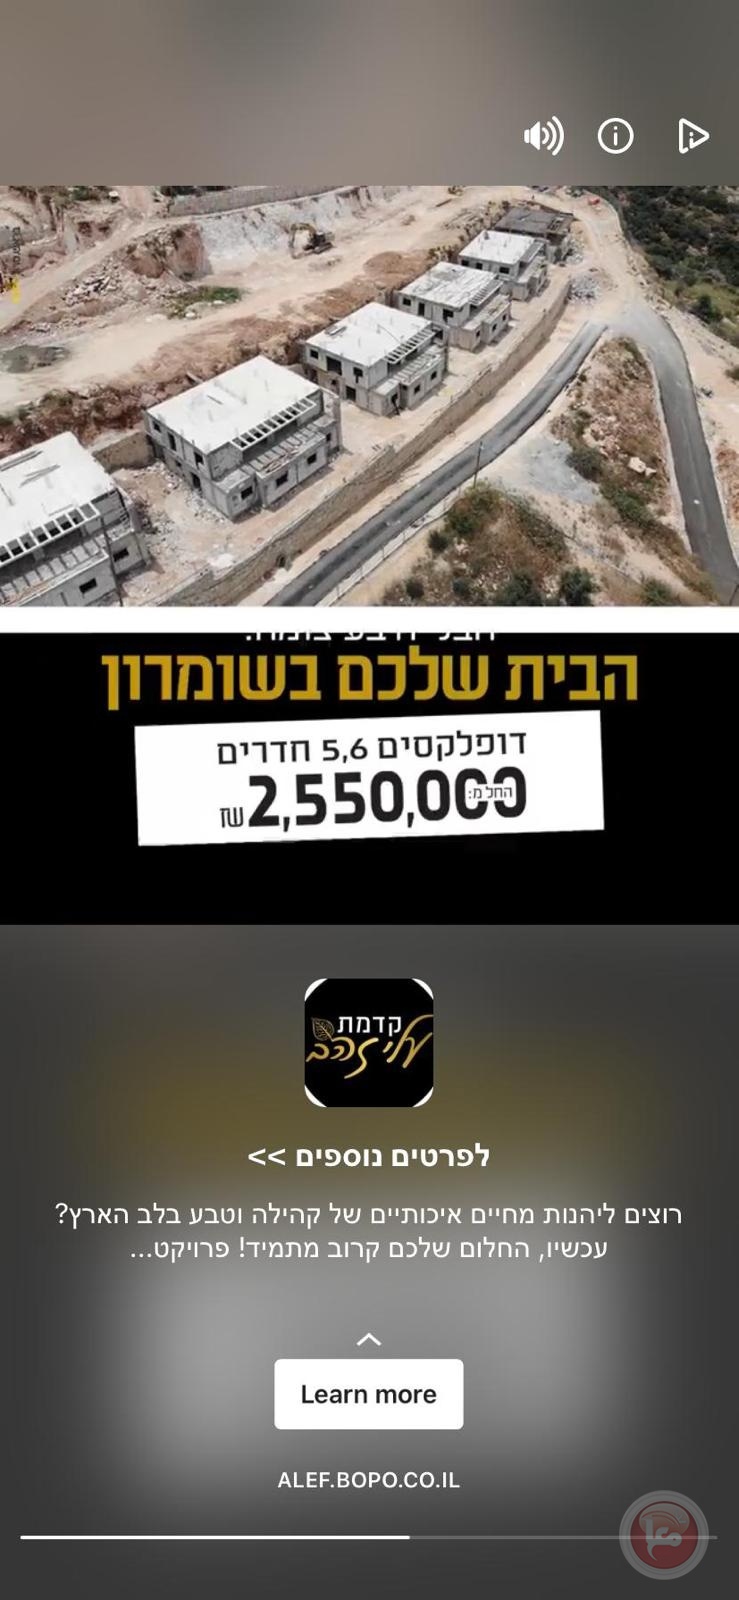 هكذا تشجع اسرائيل شراء المنازل في المستوطنات 